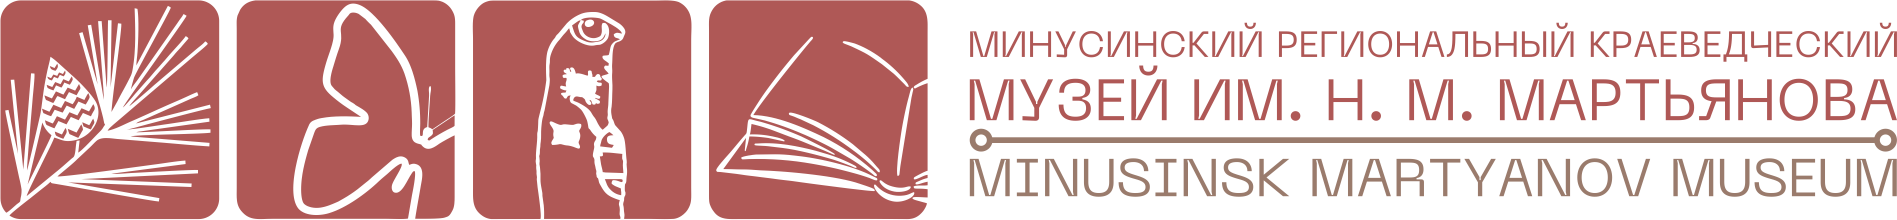 Минусинский региональный краеведческий Музей им. Н.М. Мартьянова